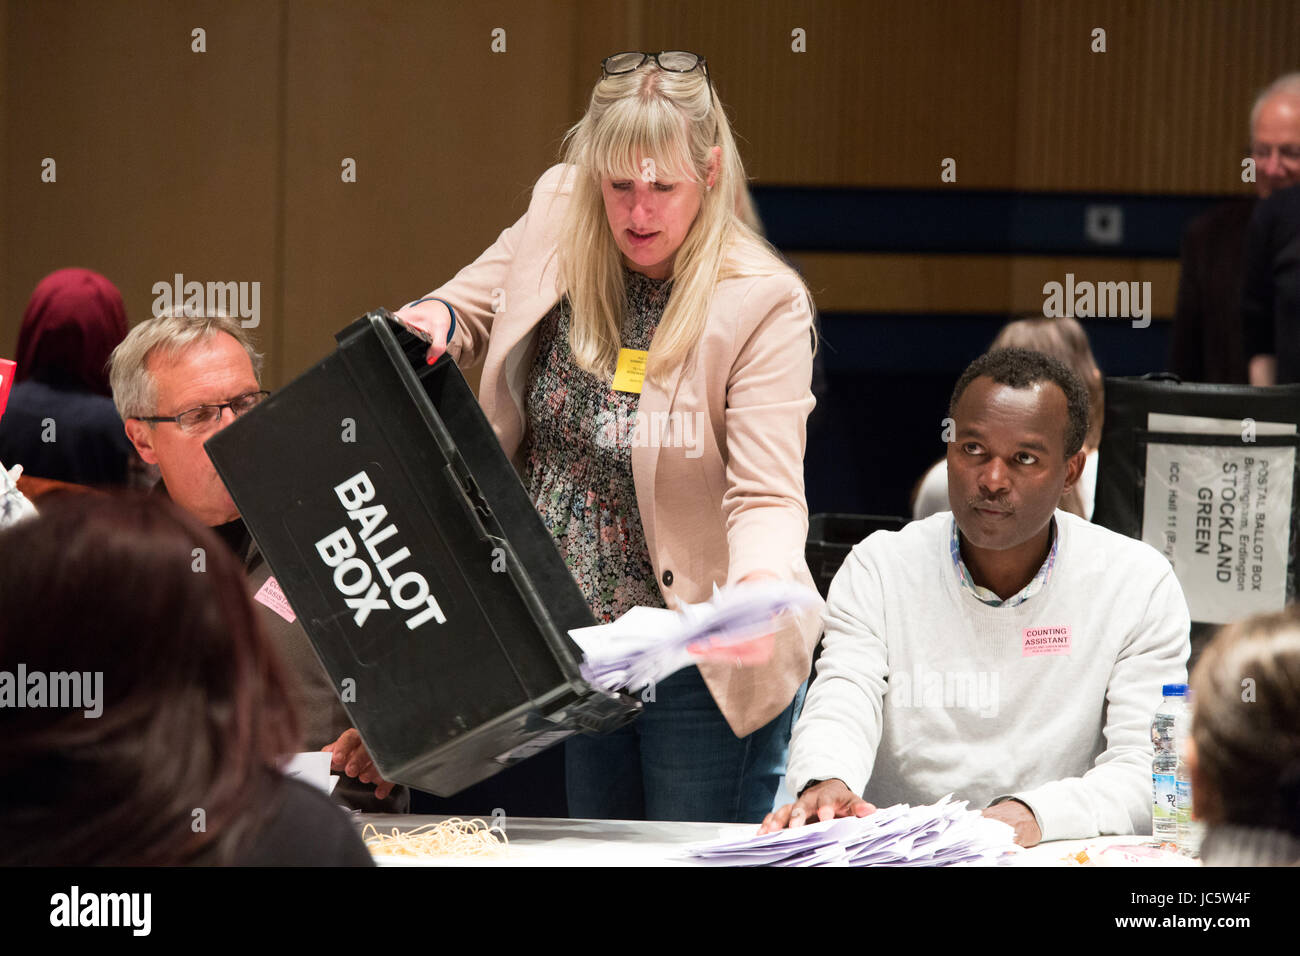 Il conteggio di prendere parte alla CPI in Birmingham per le elezioni generali 2017 Foto Stock